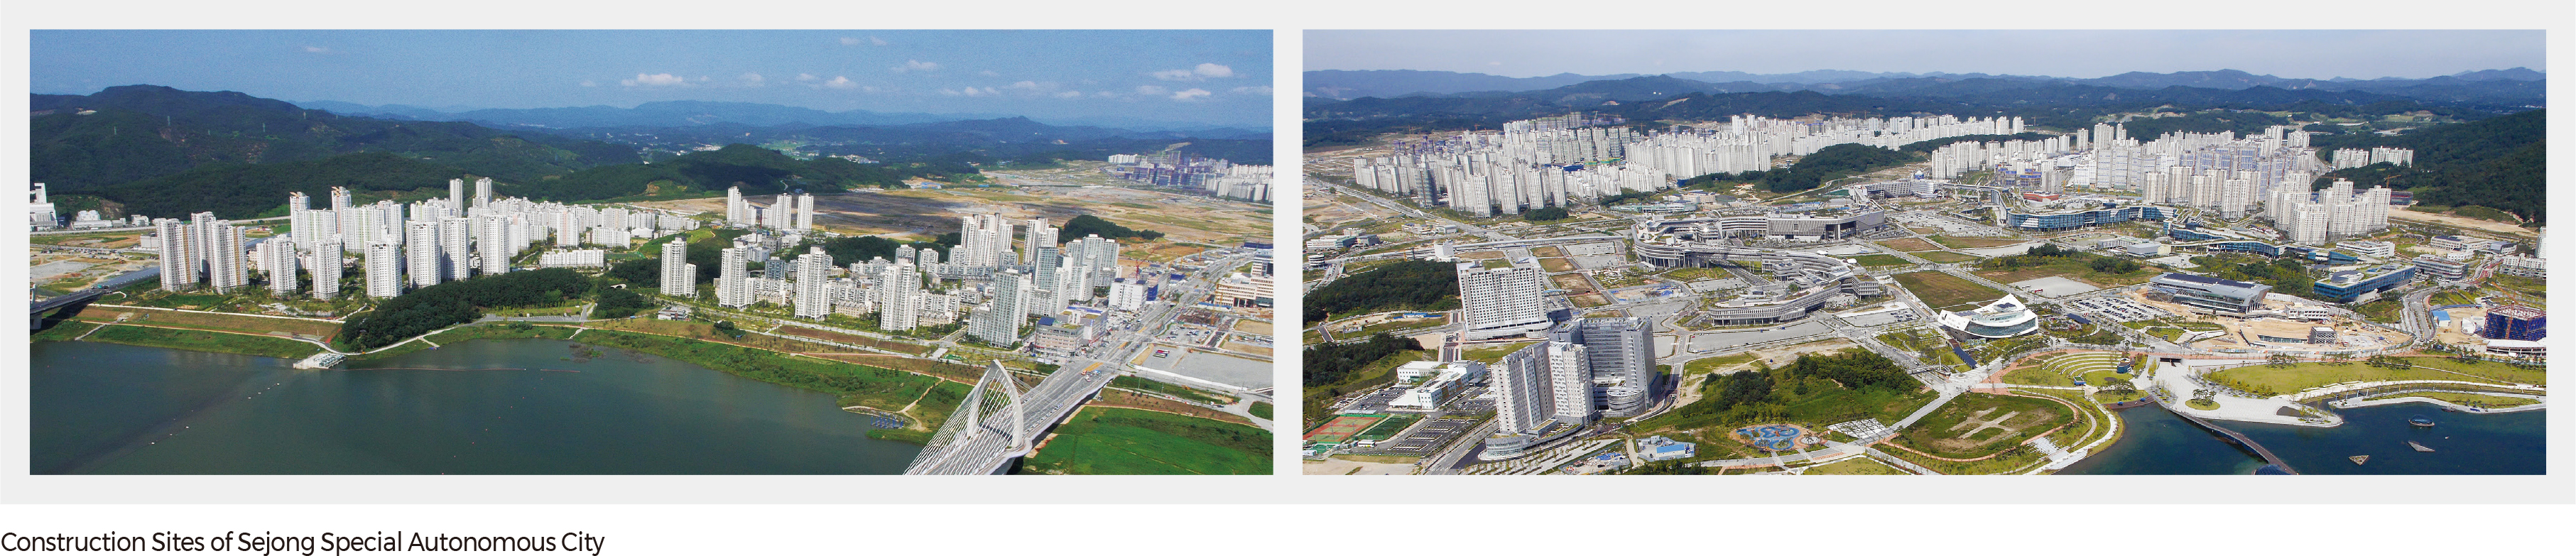 Construction Sites of Sejong Special Autonomous City